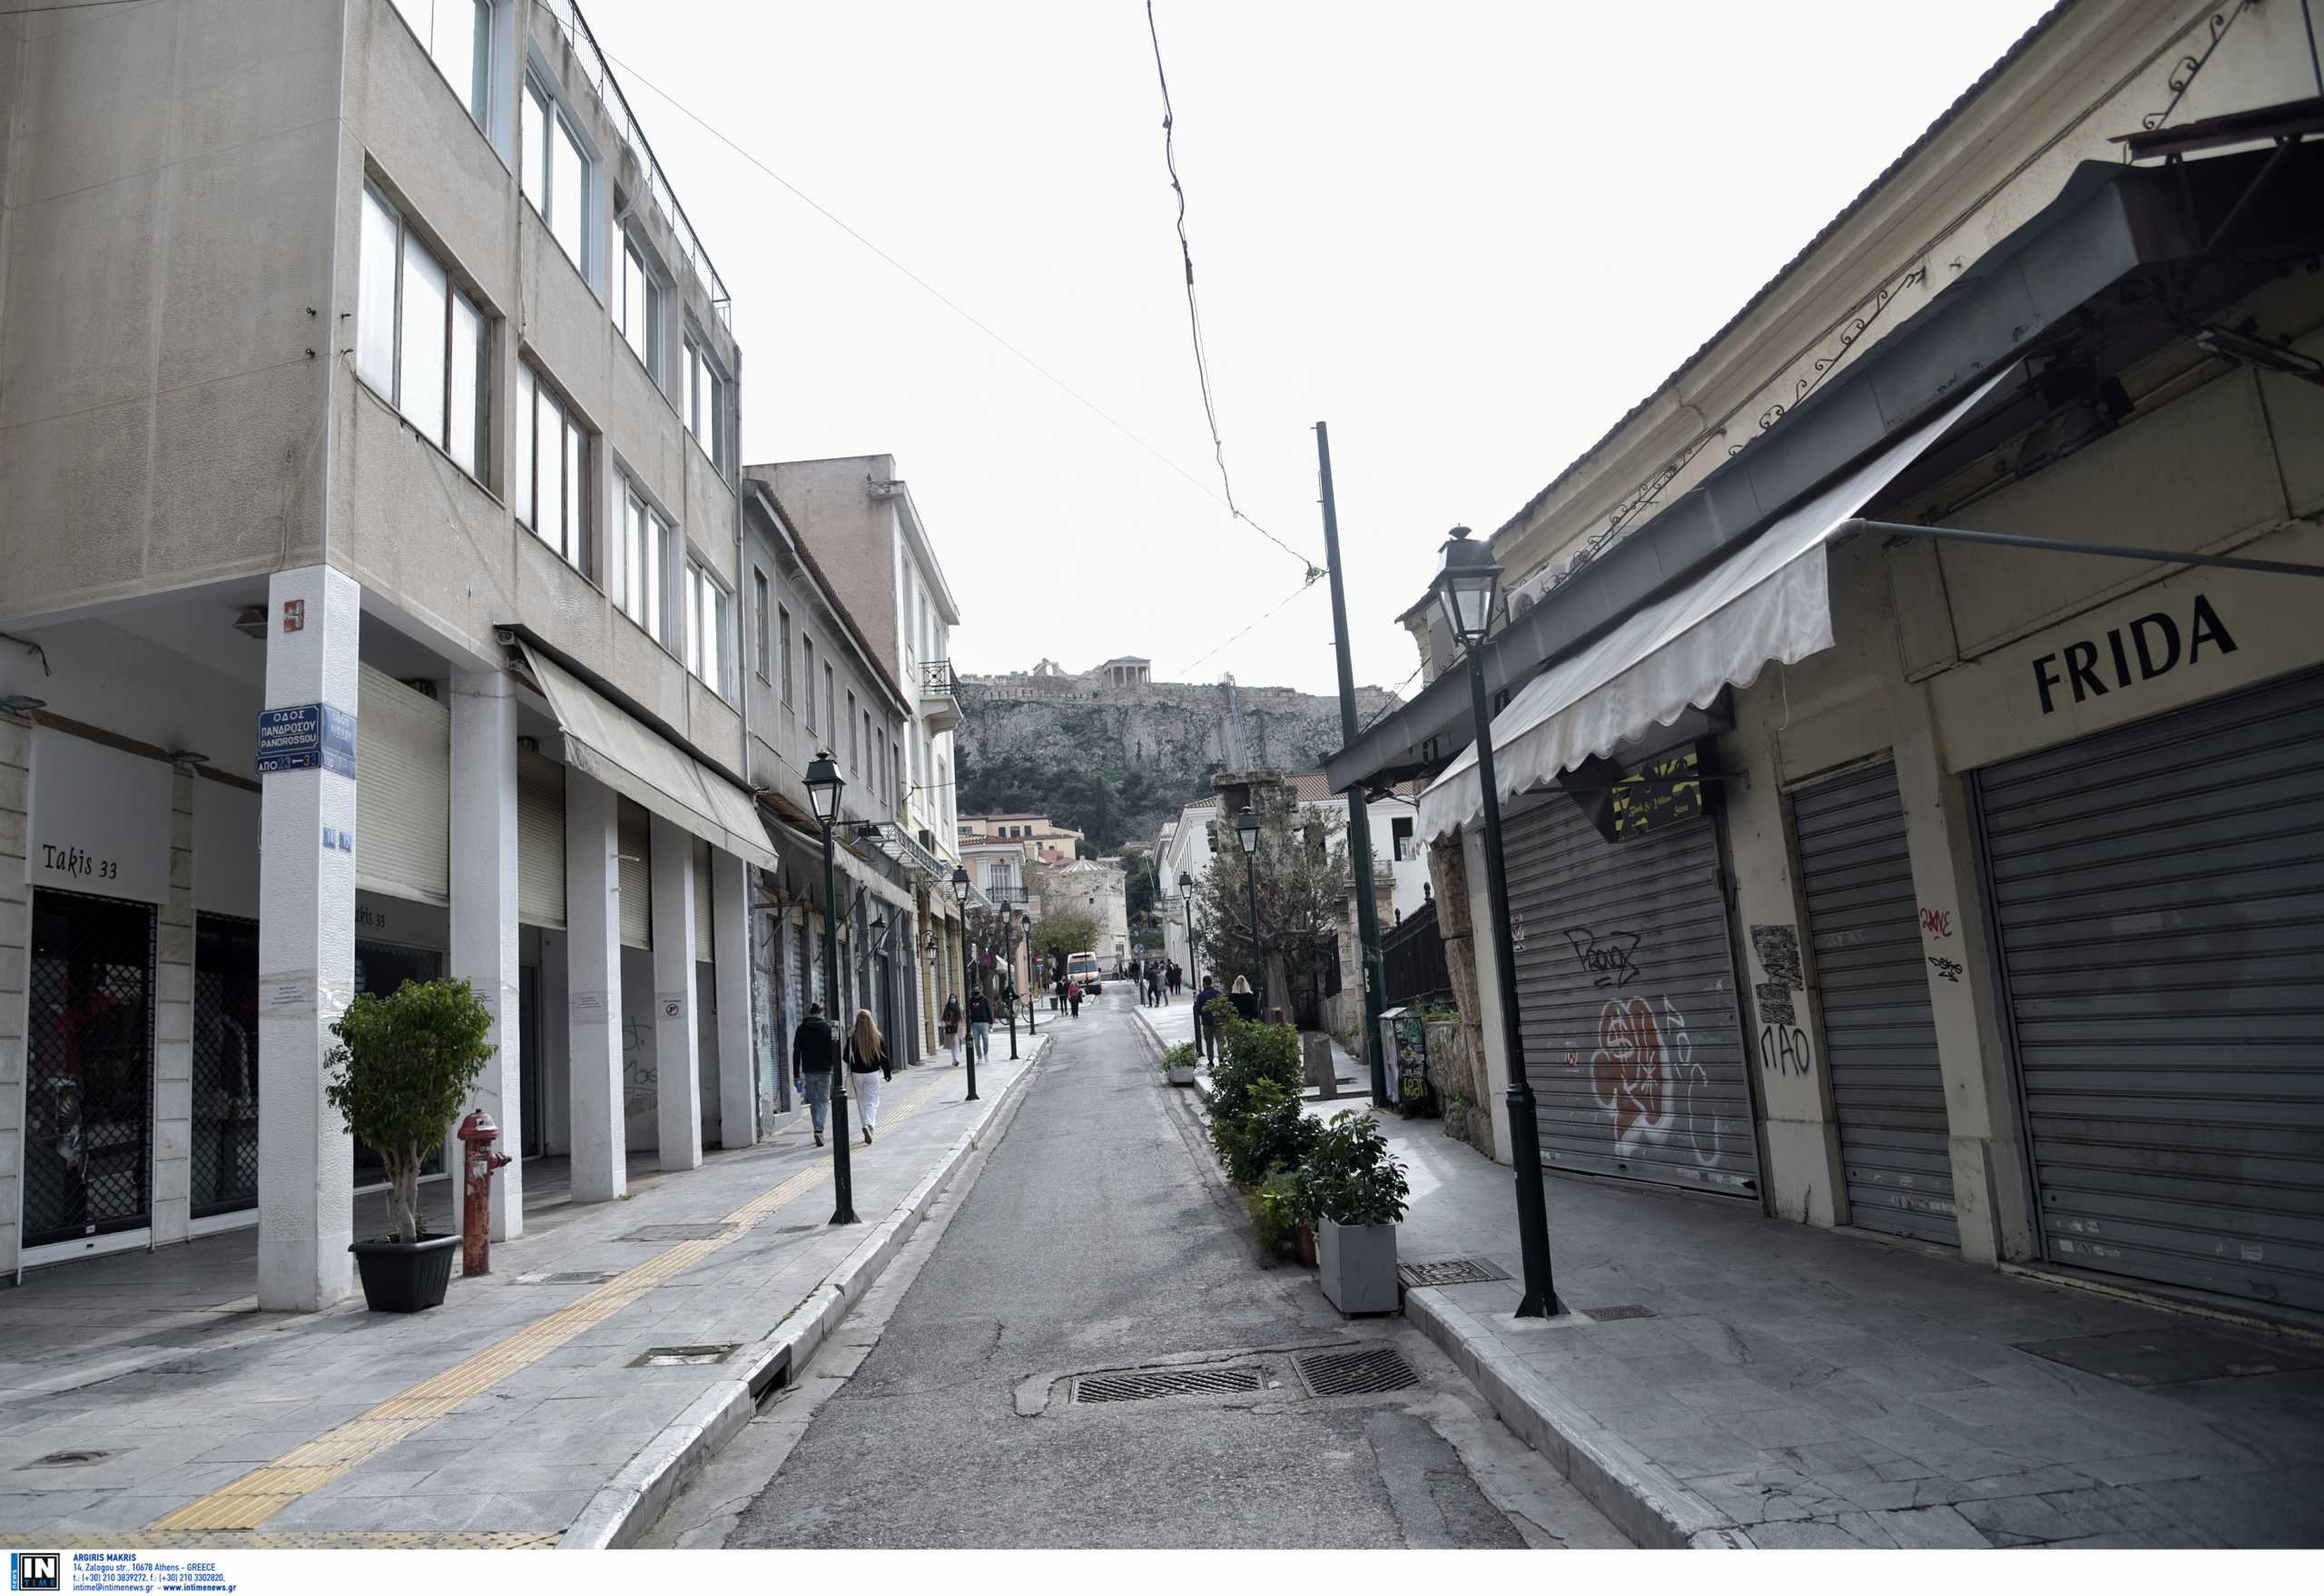 Οι συνήθειες των Αθηναίων στο πρώτο lockdown: Αντικαταθλιπτικά, ναρκωτικά και τσιγάρο δείχνουν τα απόβλητα